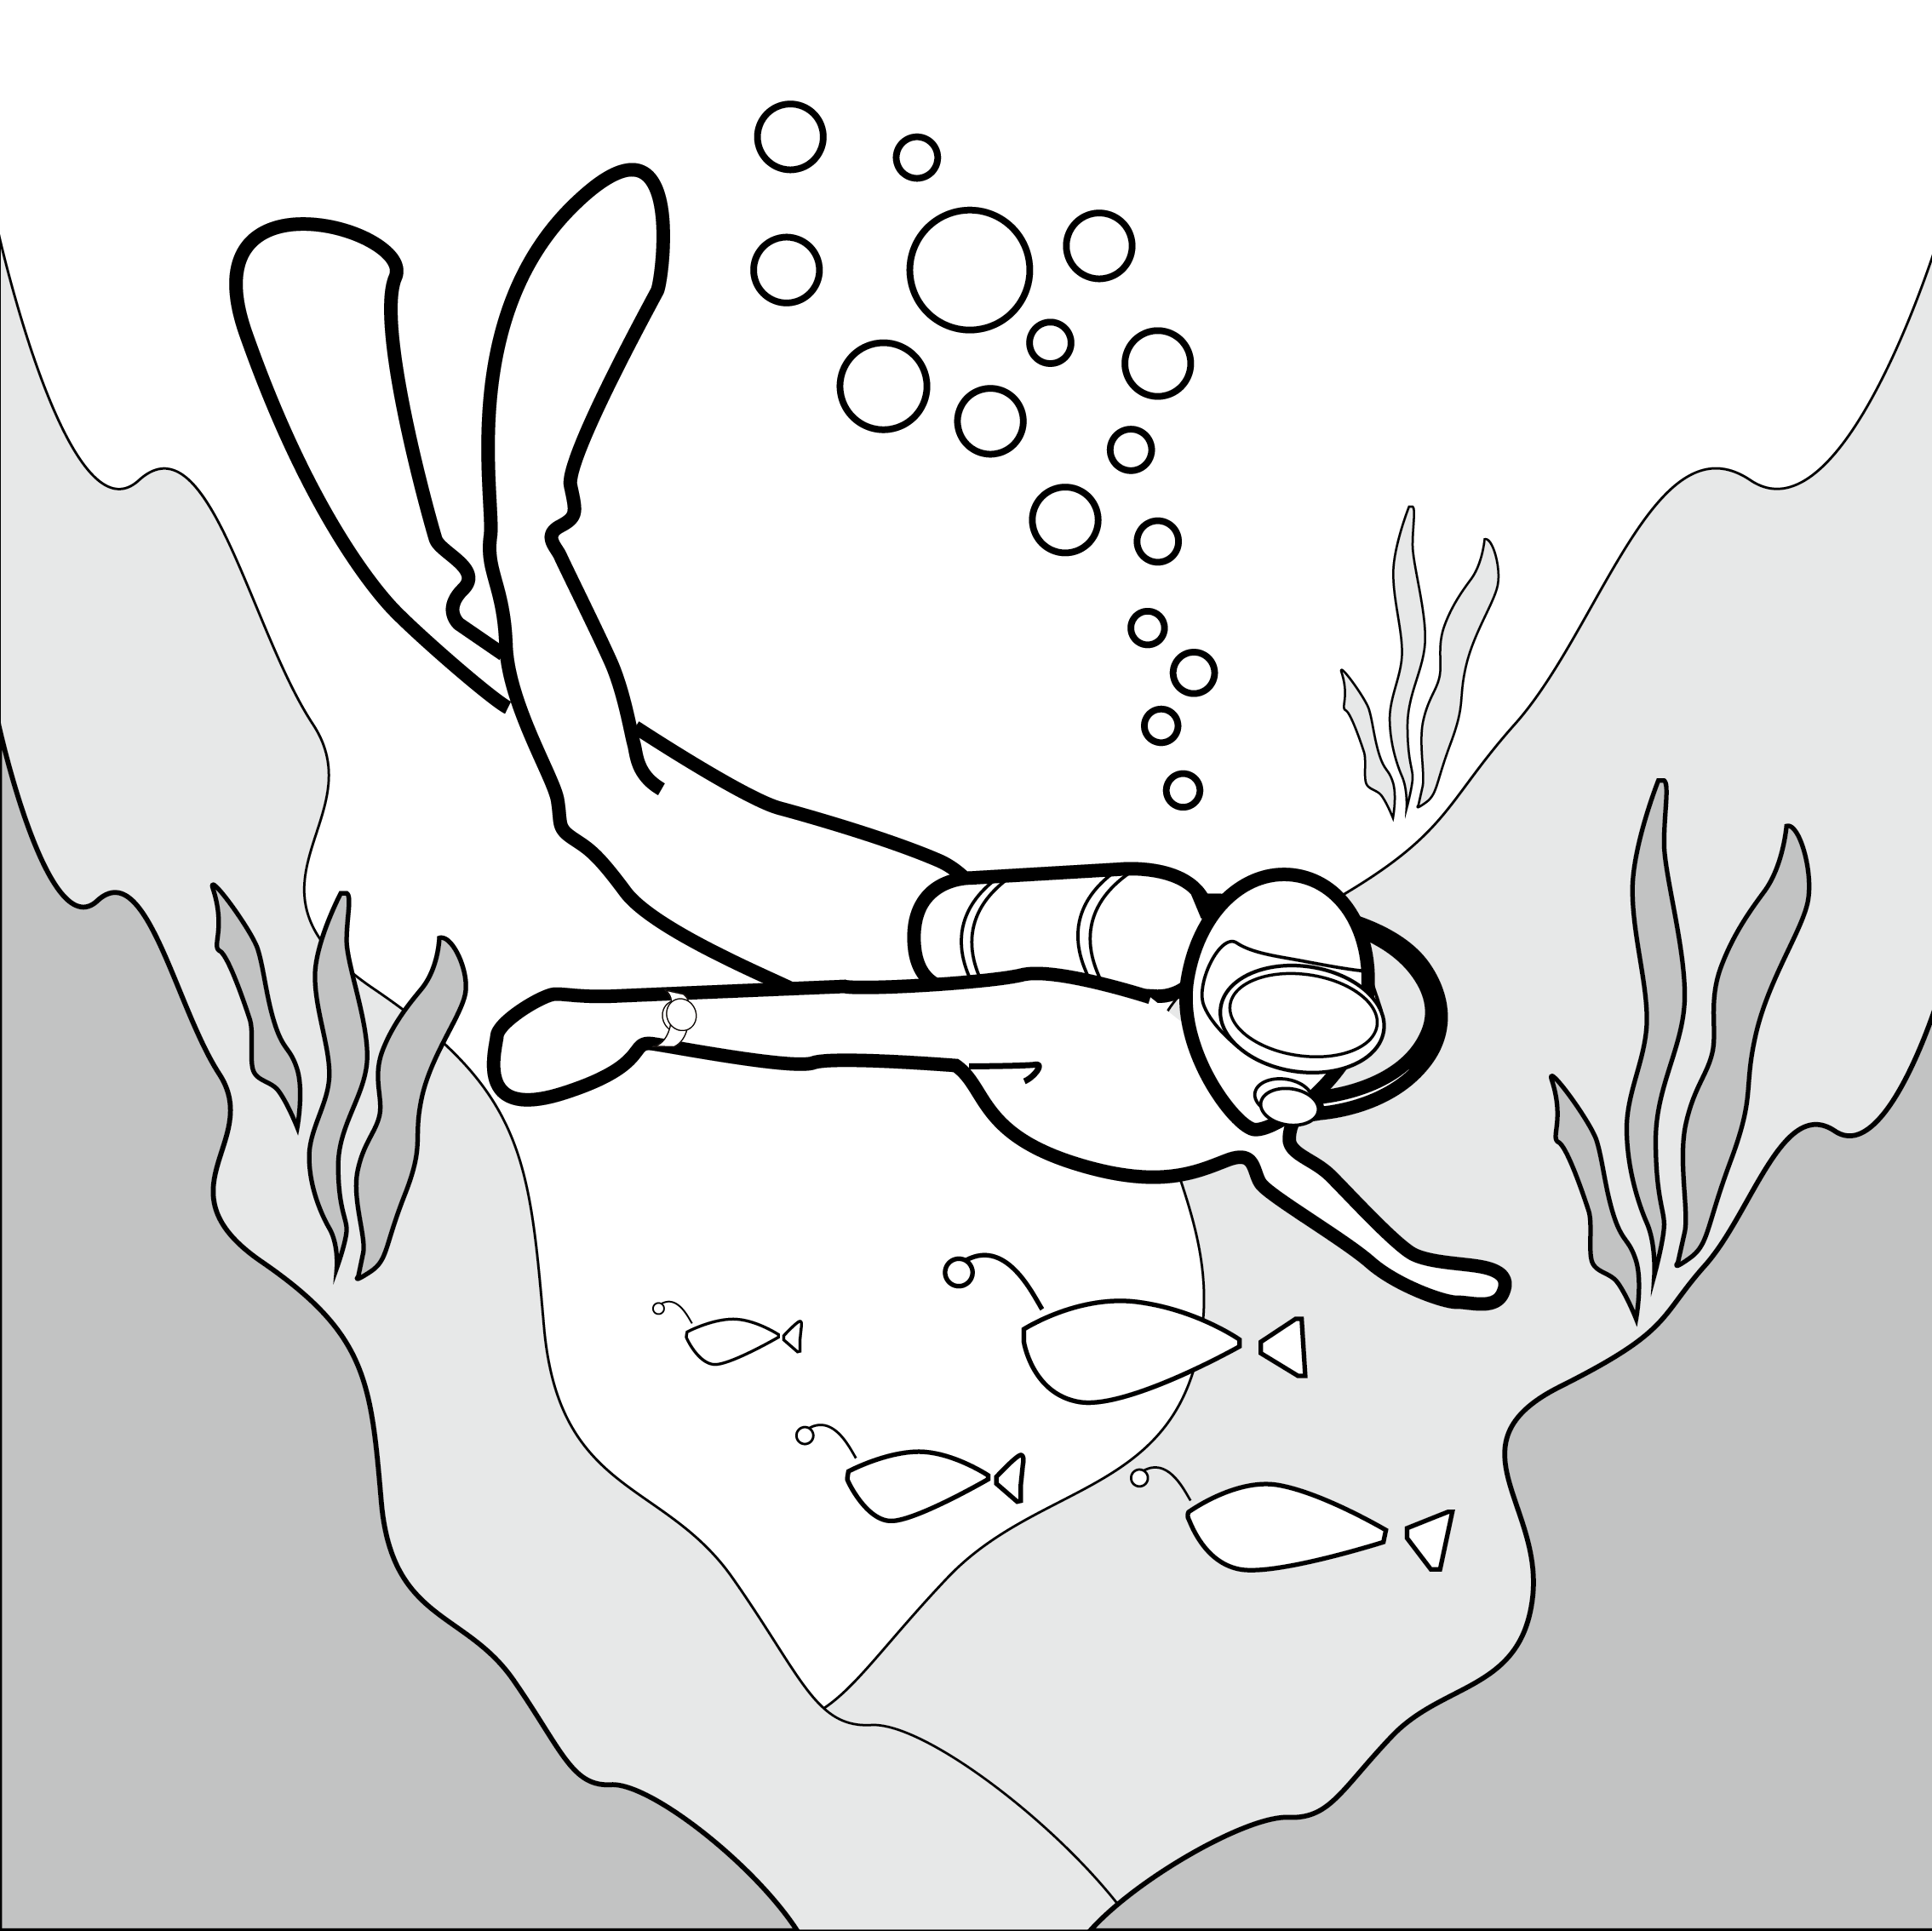 空気ボンベを使用する潜水（スキューバダイビング）